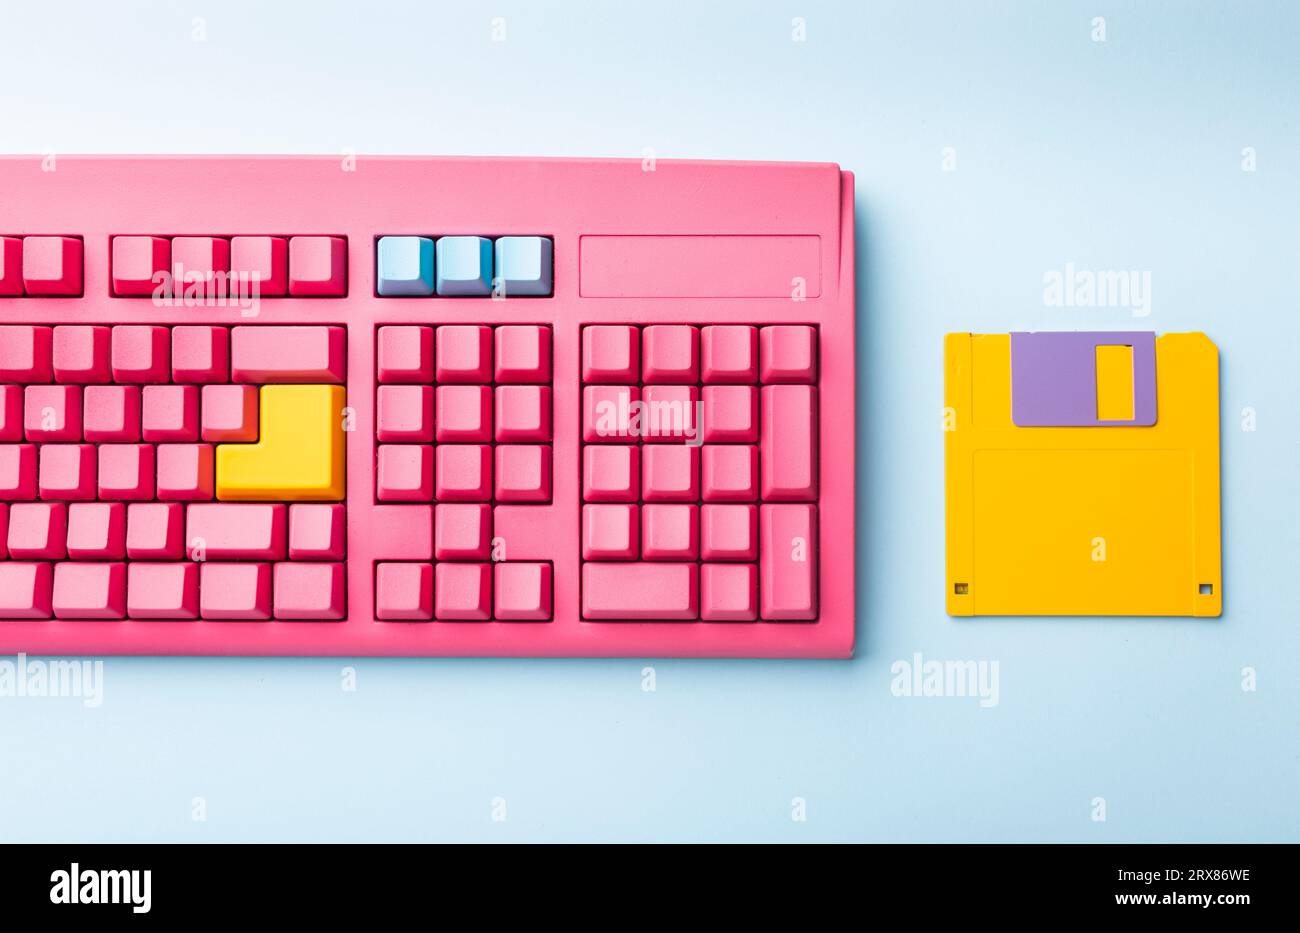 Disketten und Tastatur auf hellen farbigen Hintergründen. Hochwertige Fotos Stockfoto